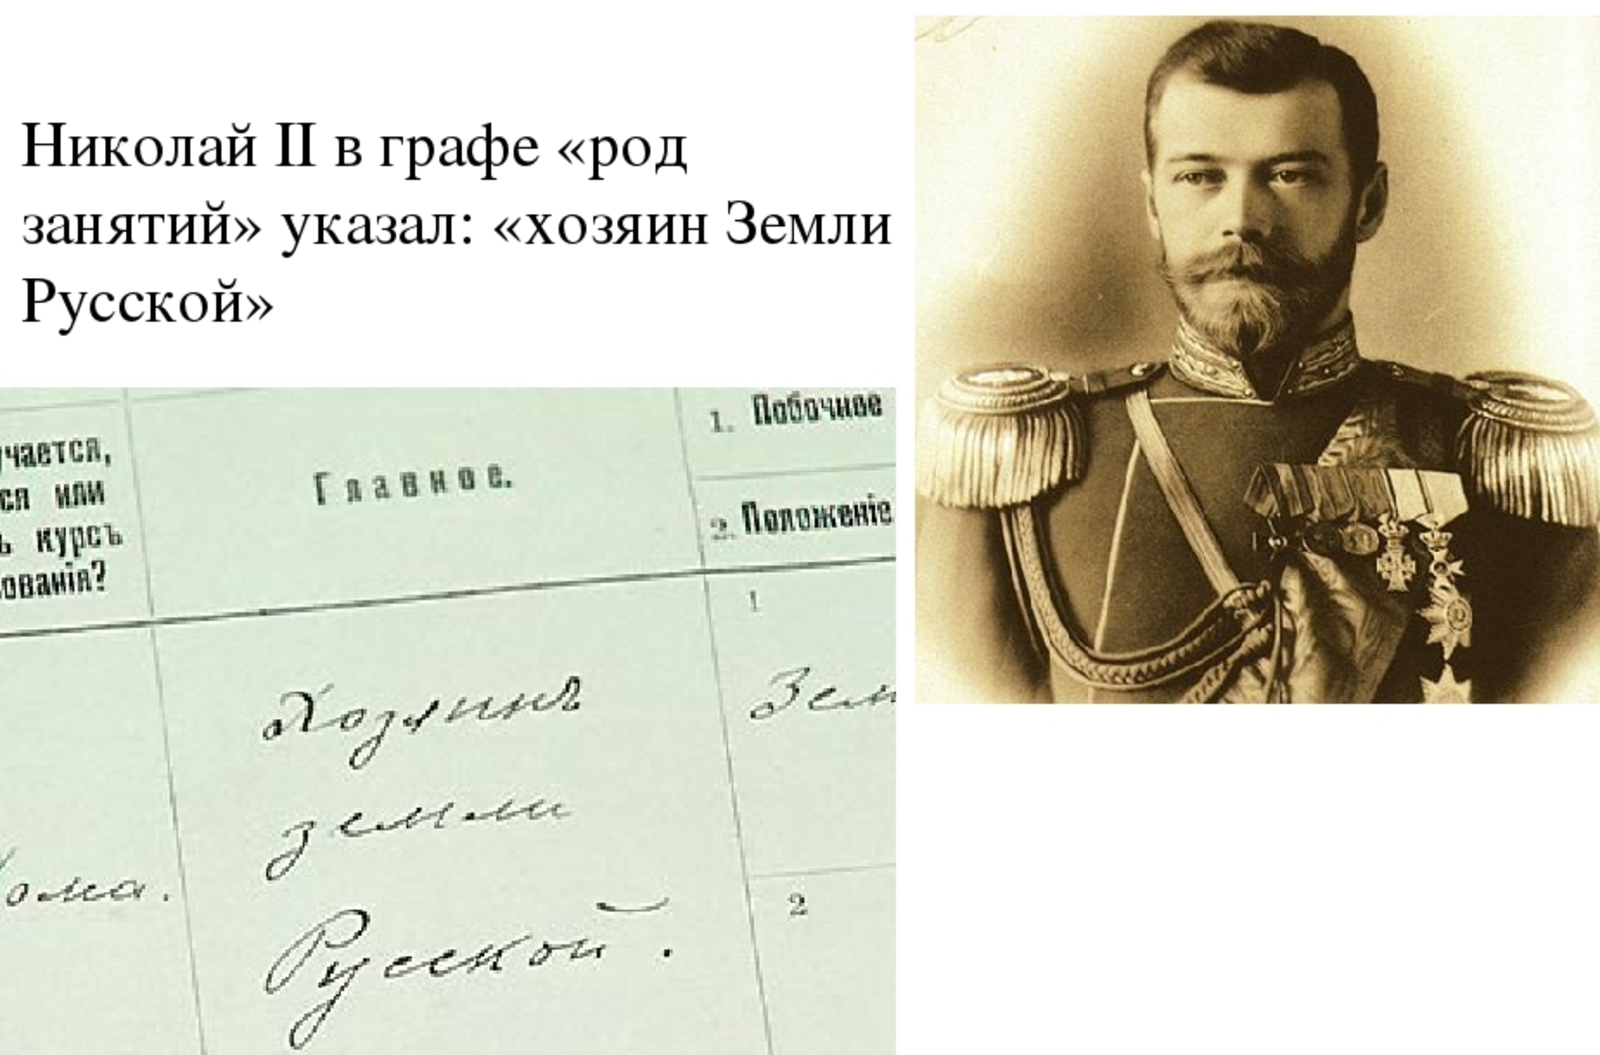 Янаул – в Пермской губернии, Николай II – «Хозяин земли русской»…